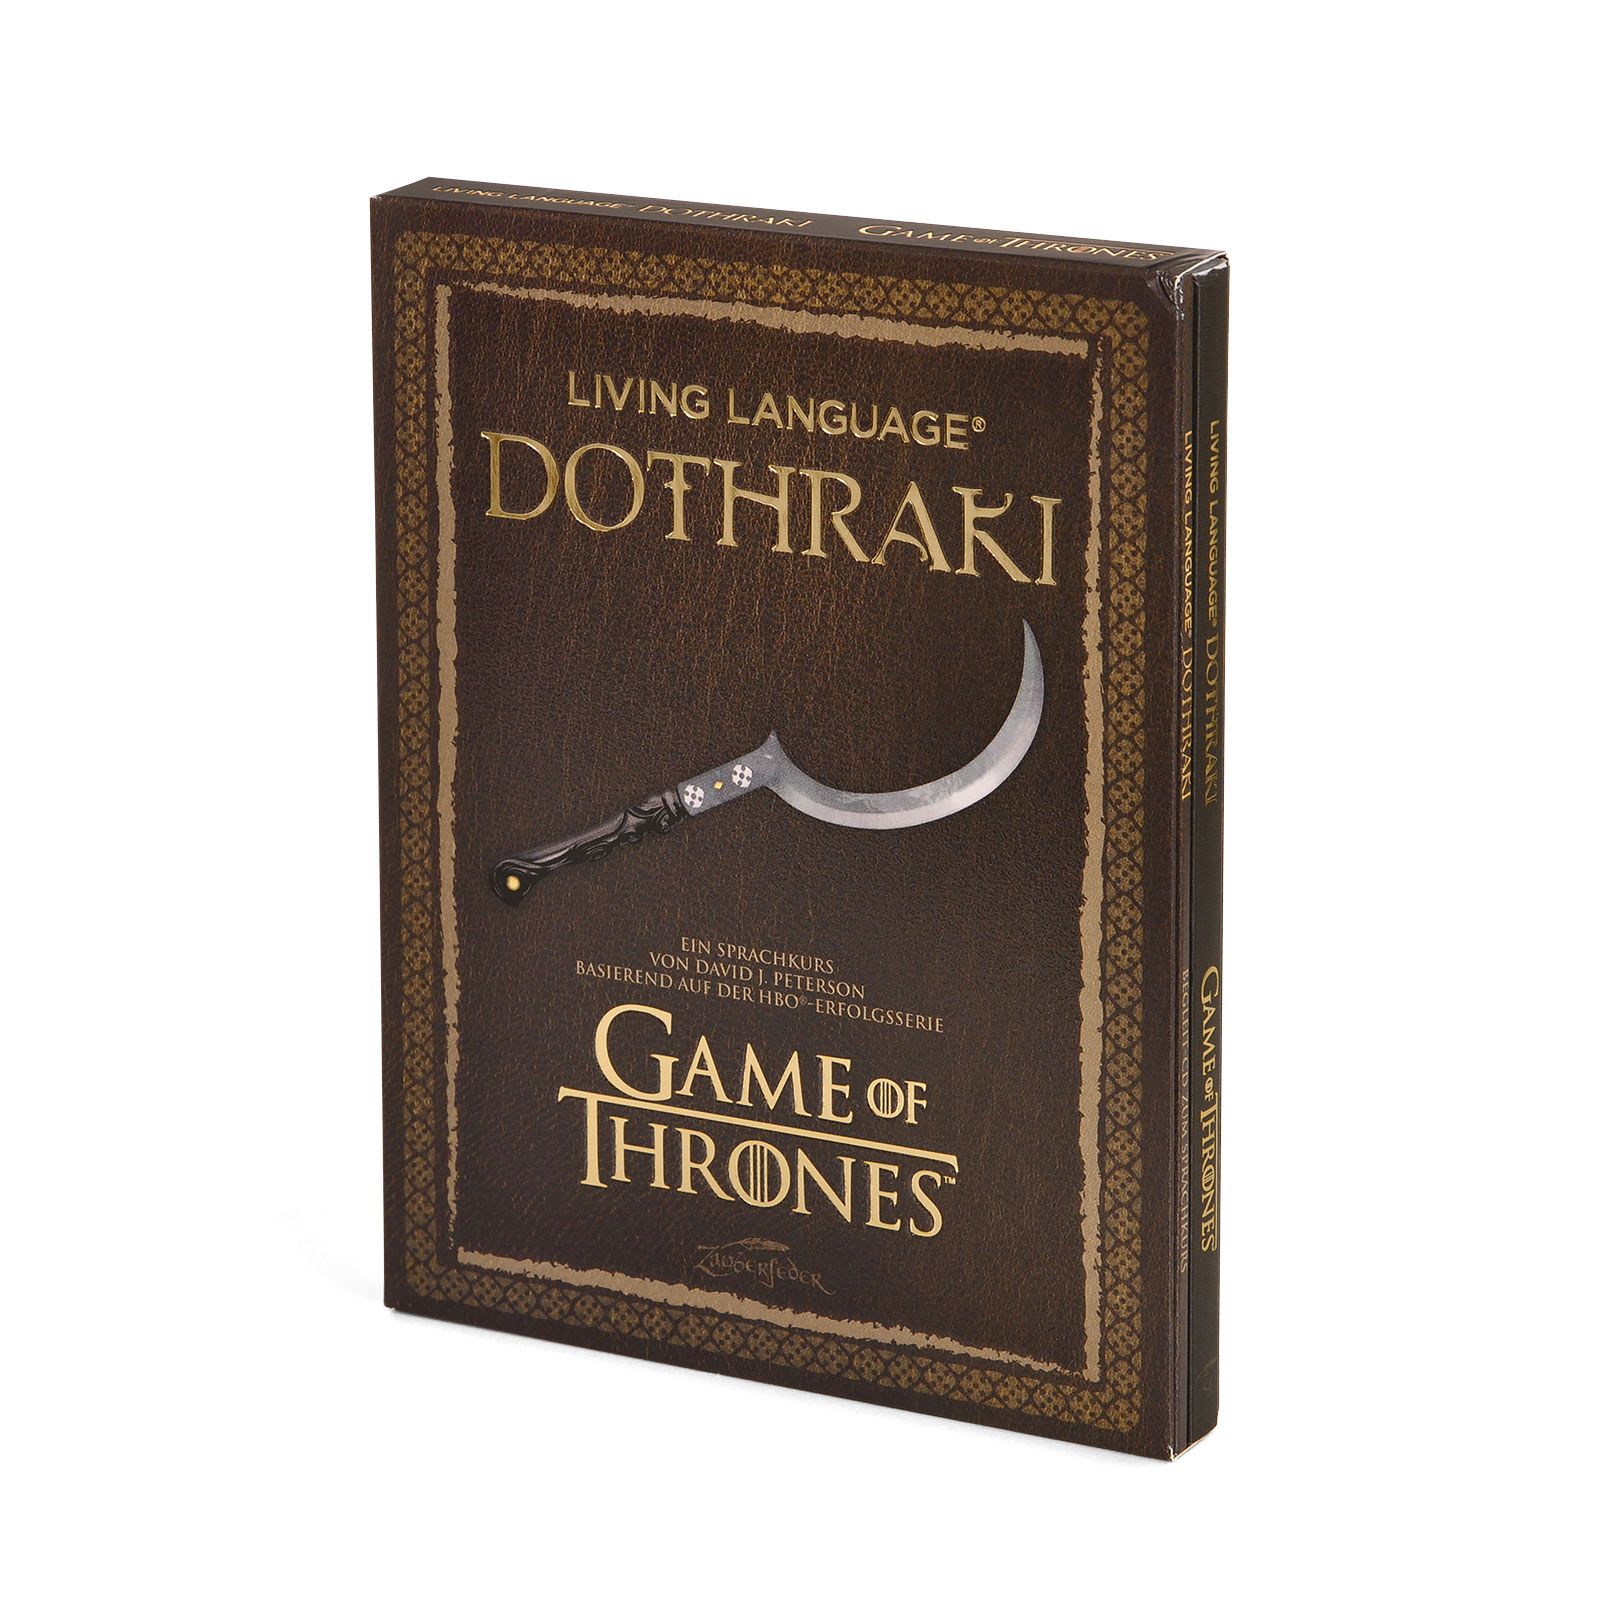 Game of Thrones - Dothraki - Een taalcursus